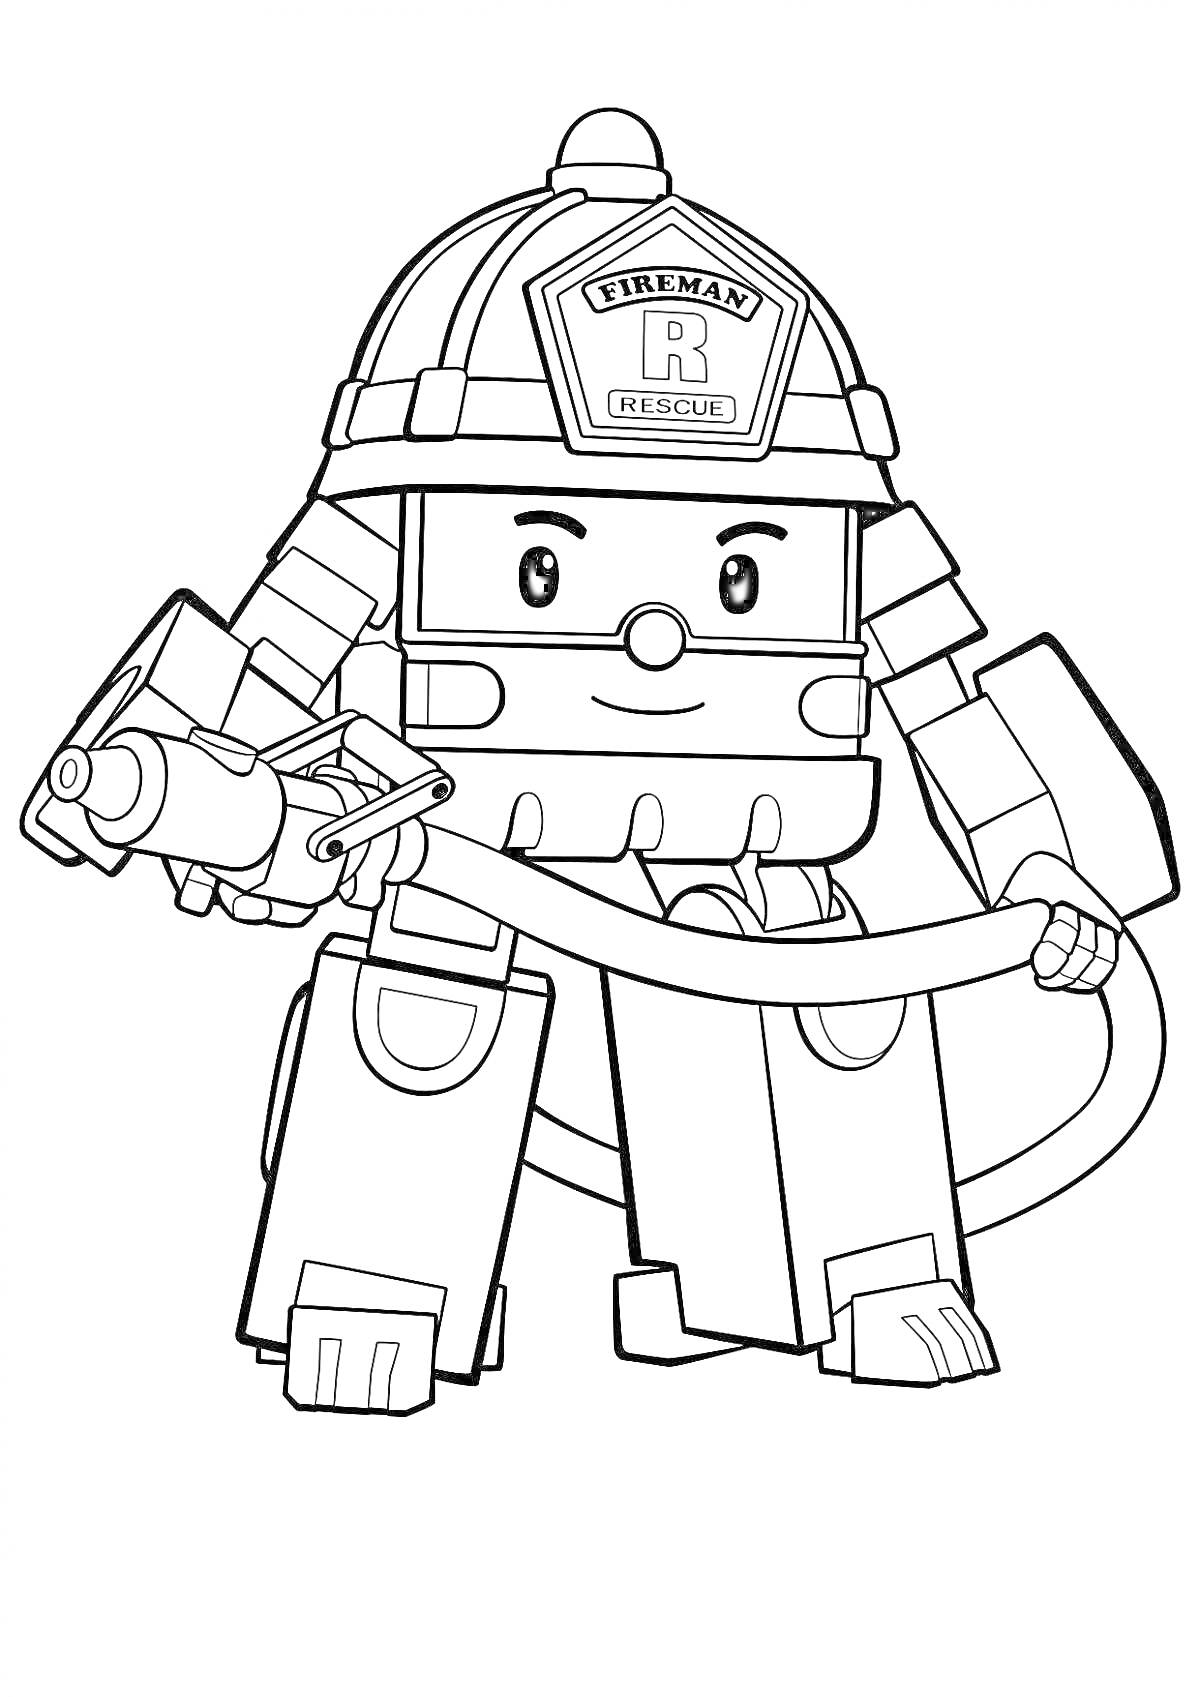 Раскраска Пожарный робот с шлангом и топором